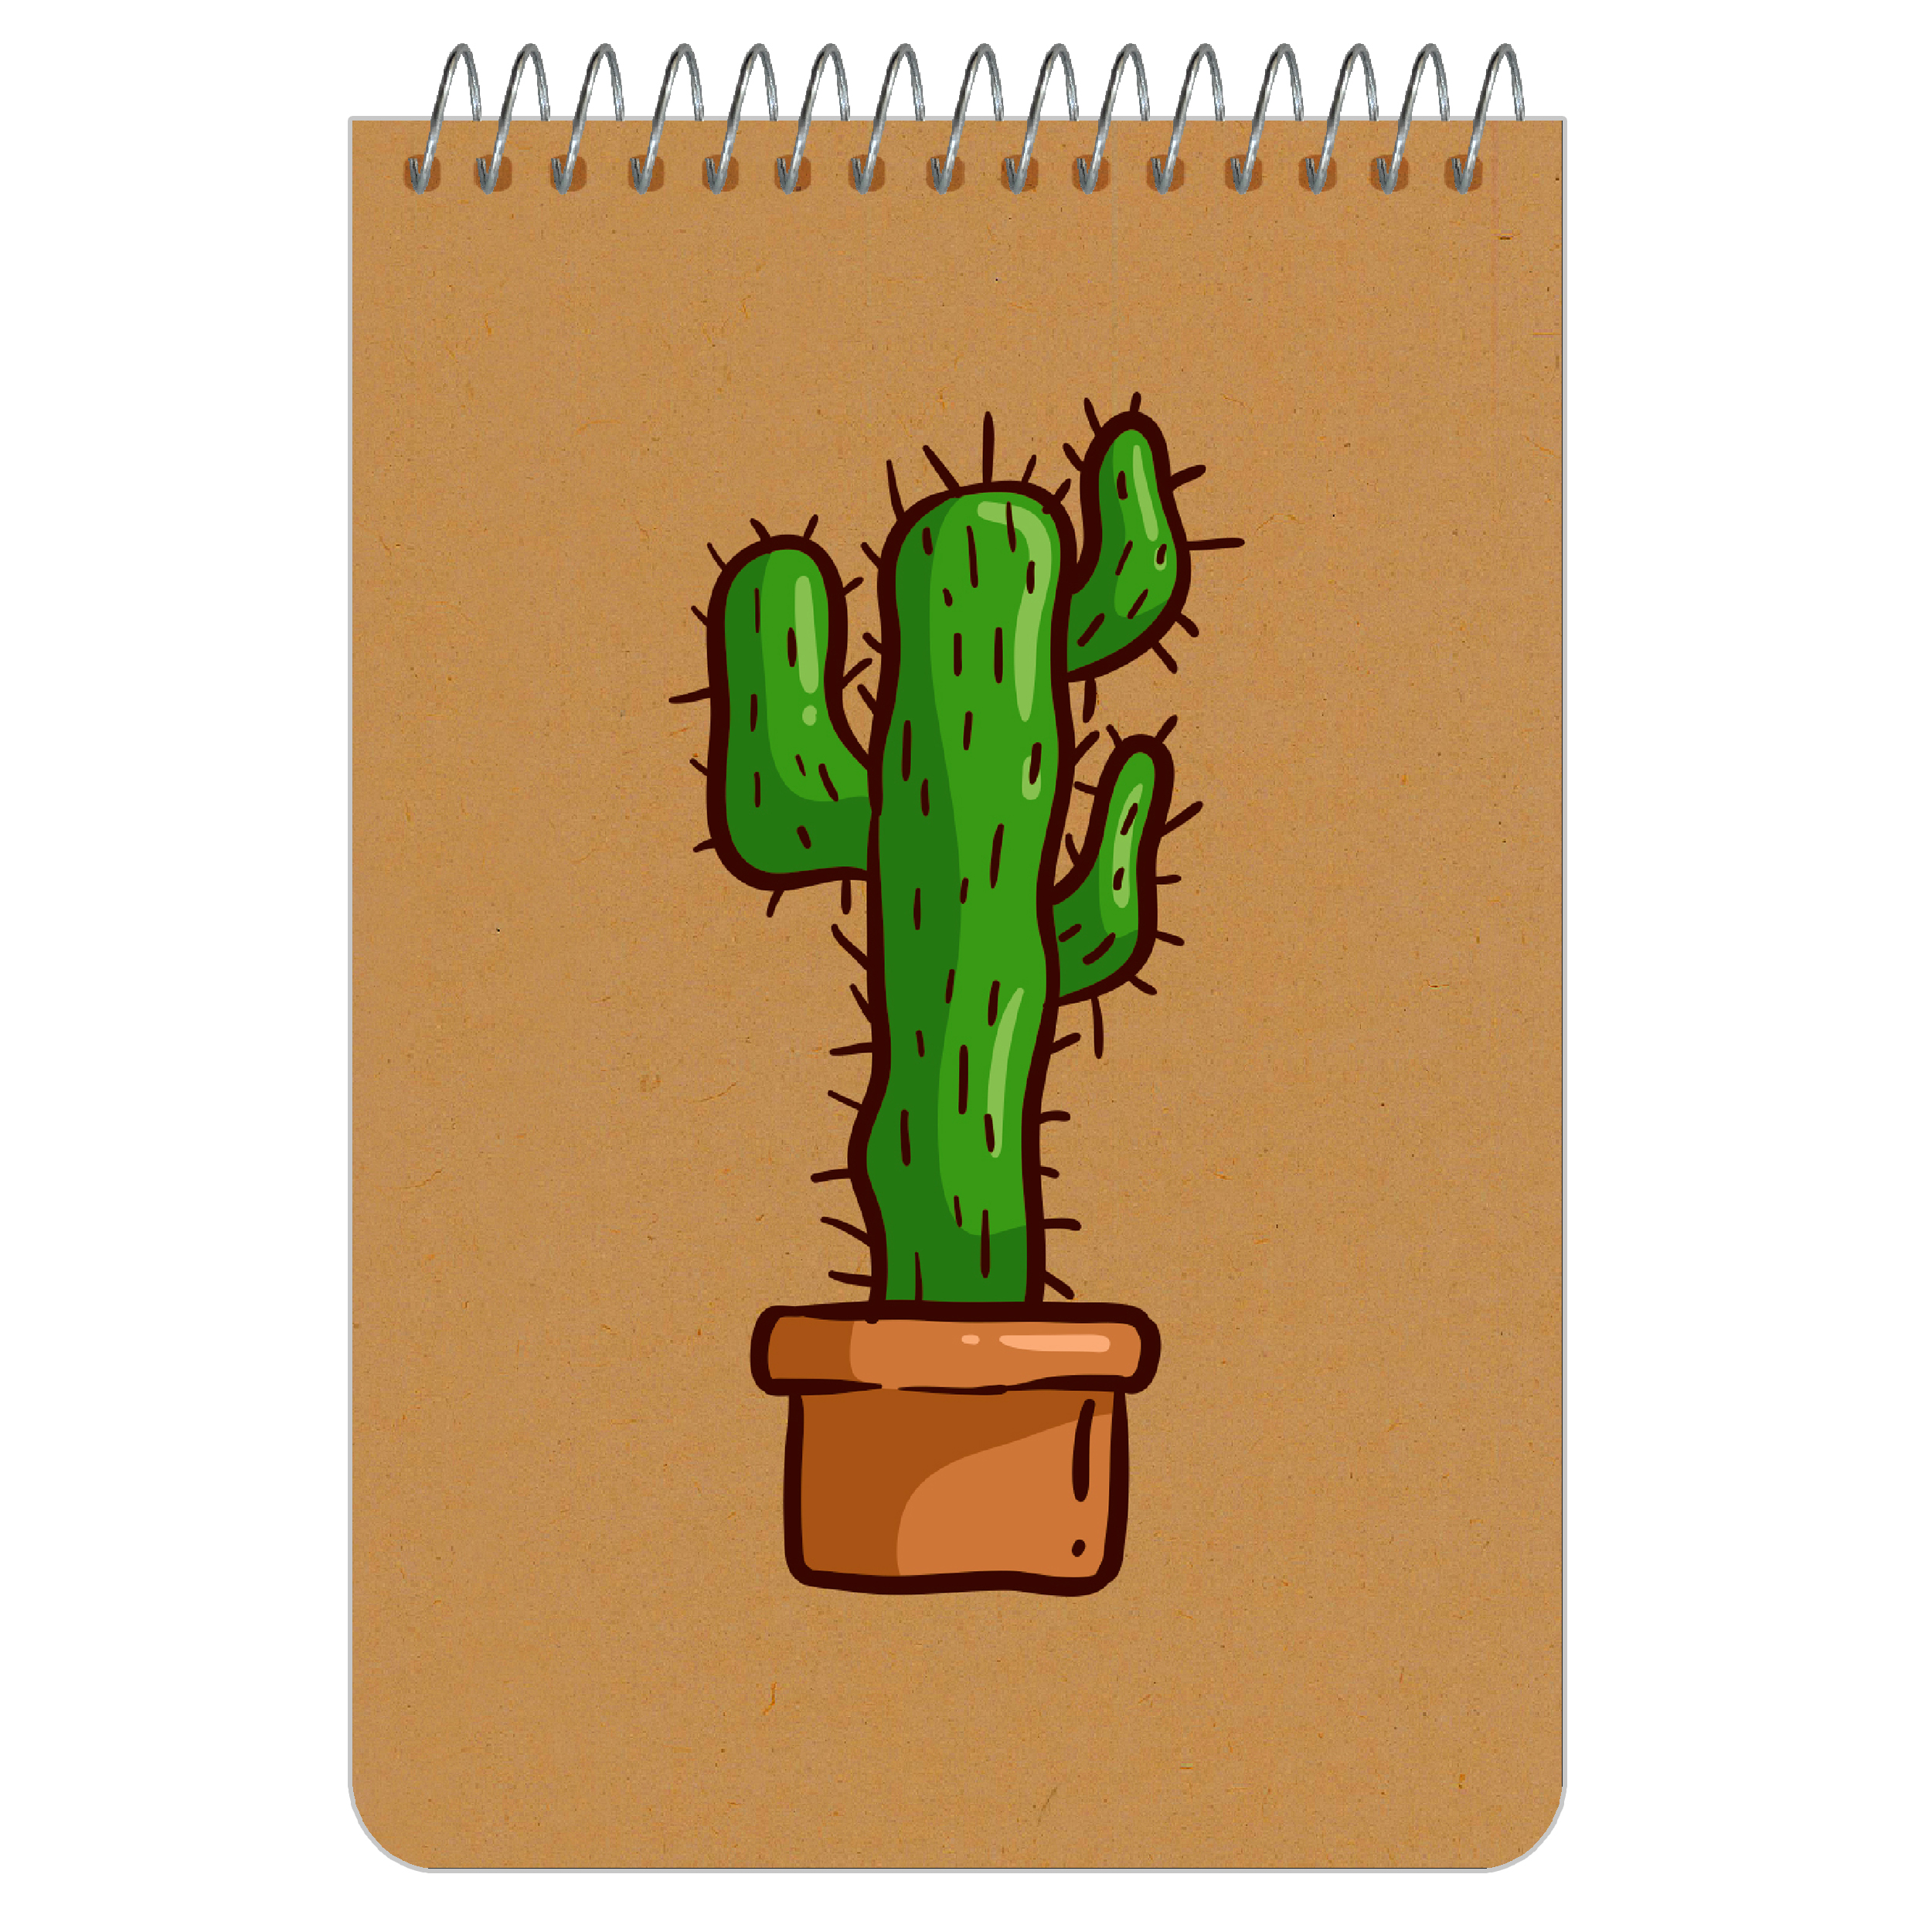 نکته خرید - قیمت روز دفترچه یادداشت 100 برگ مستر راد طرح کاکتوس کد cactus 1705 خرید